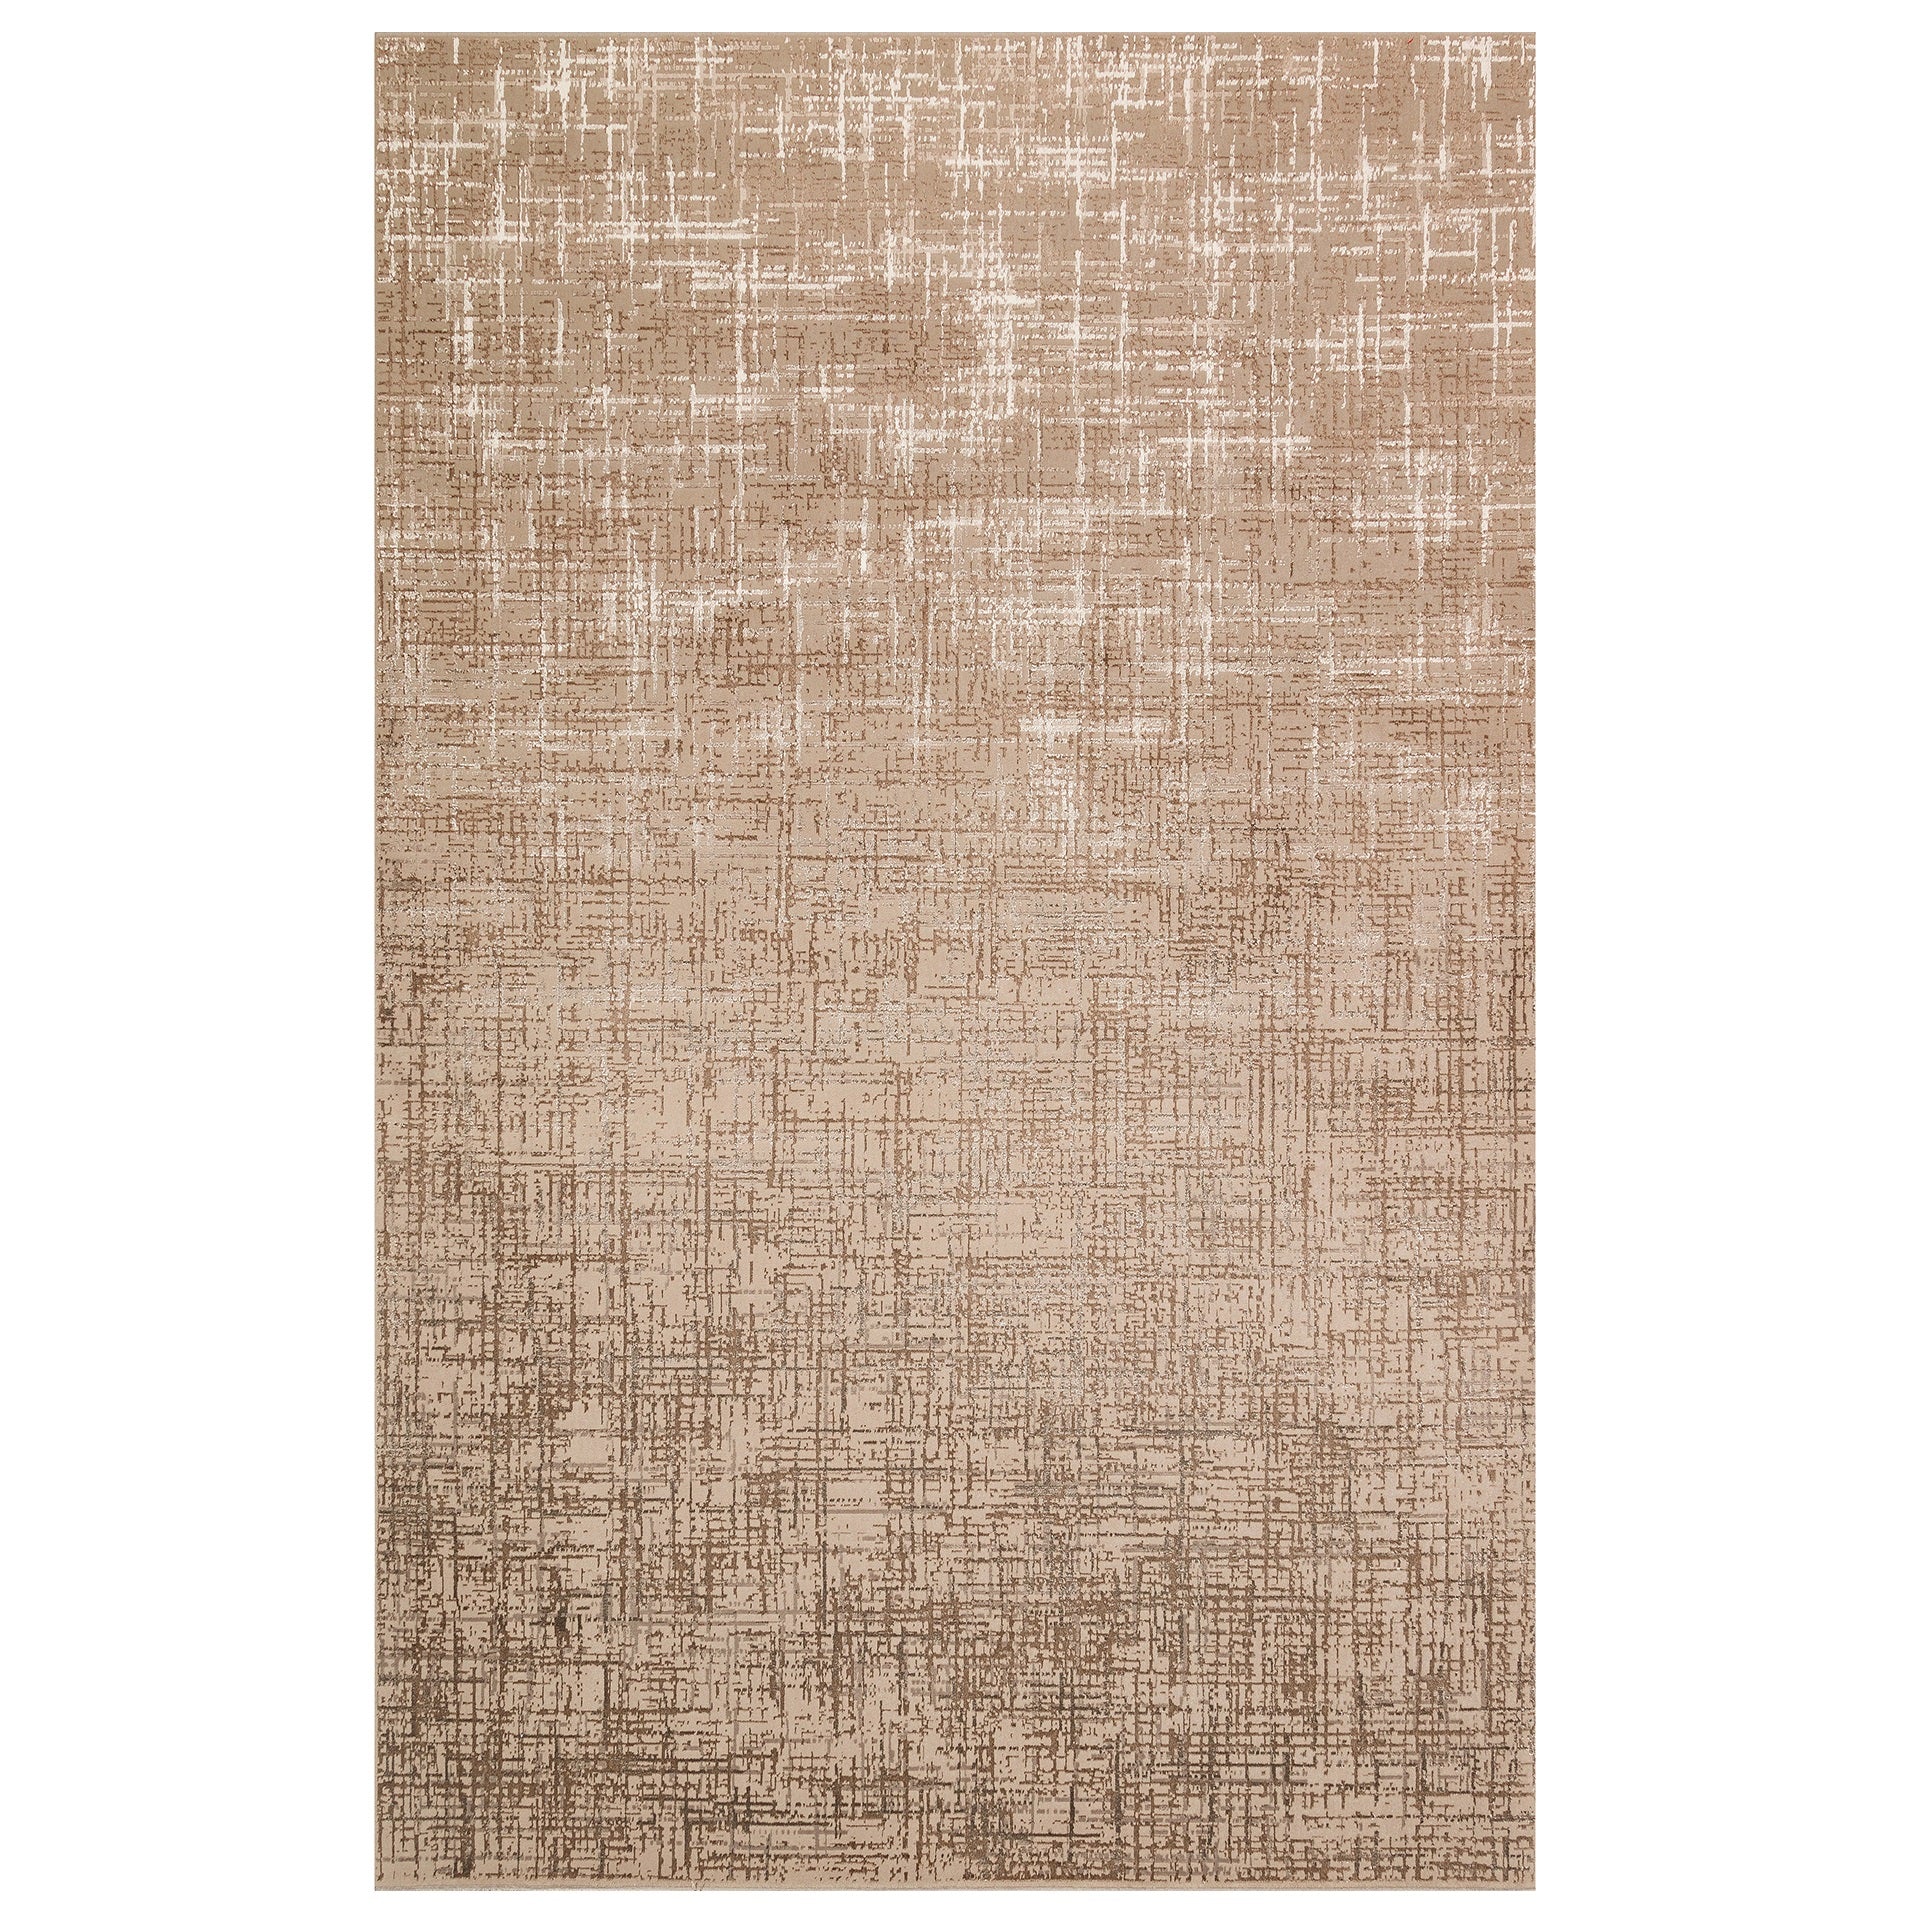 Teppich Byblos mandelfarben 200x285 von Richmond; rechteckiger Teppich aus glänzendem Material.